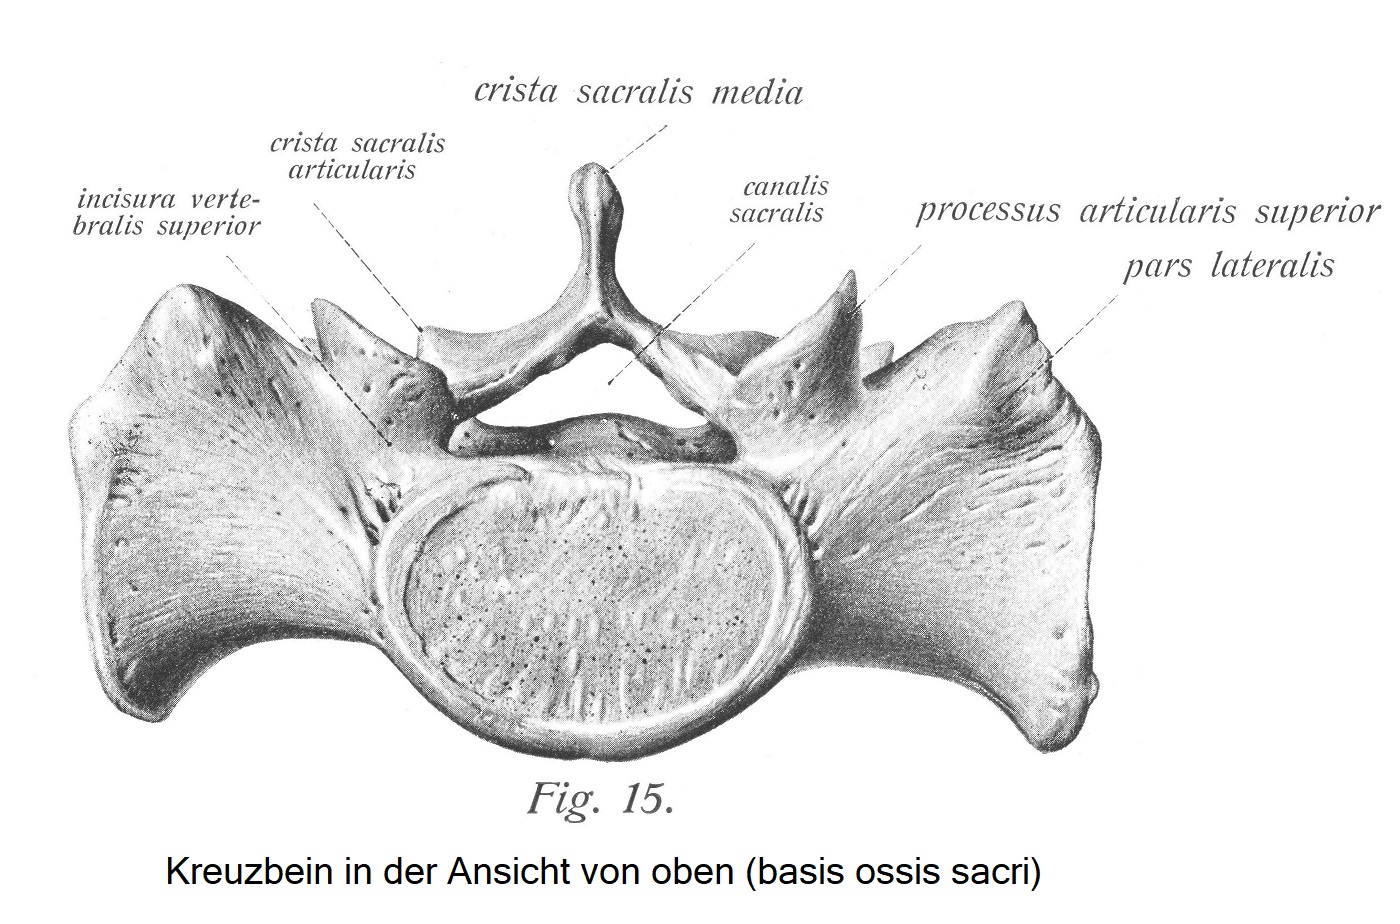 Вид крестца сверху (basis ossis sacri)